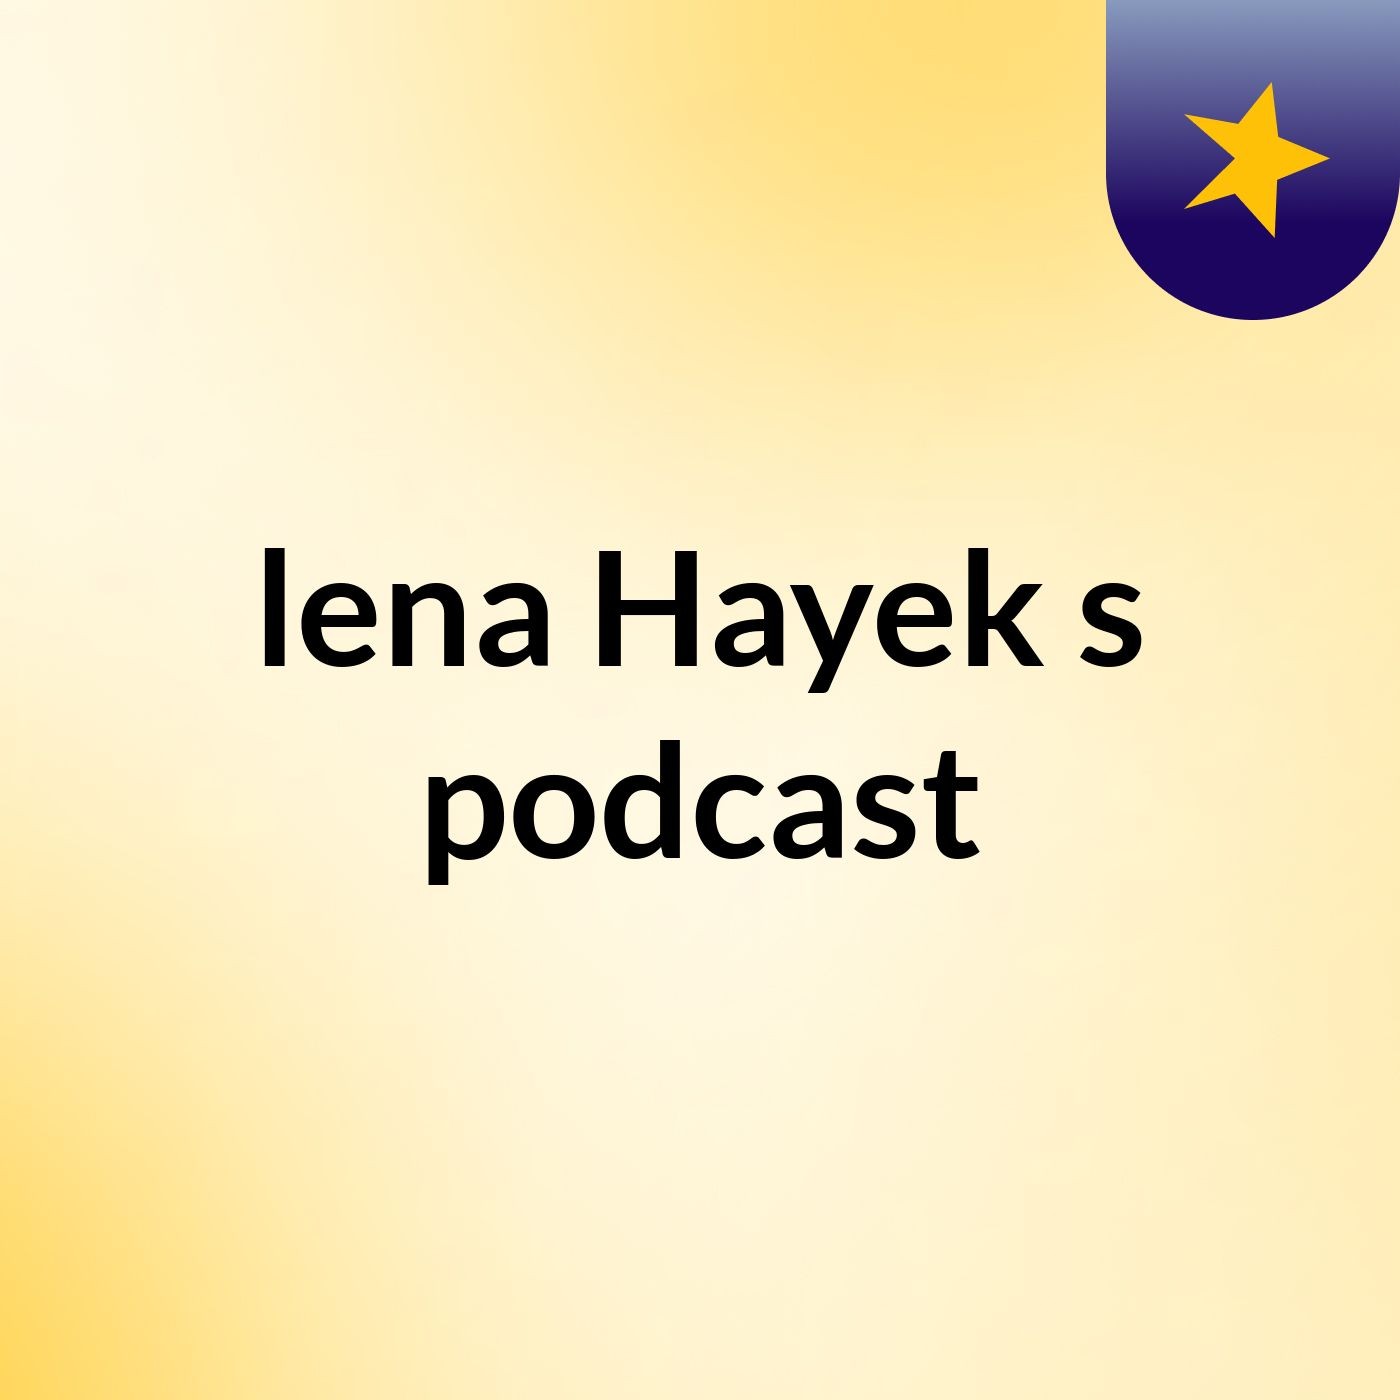 lena Hayek's podcast